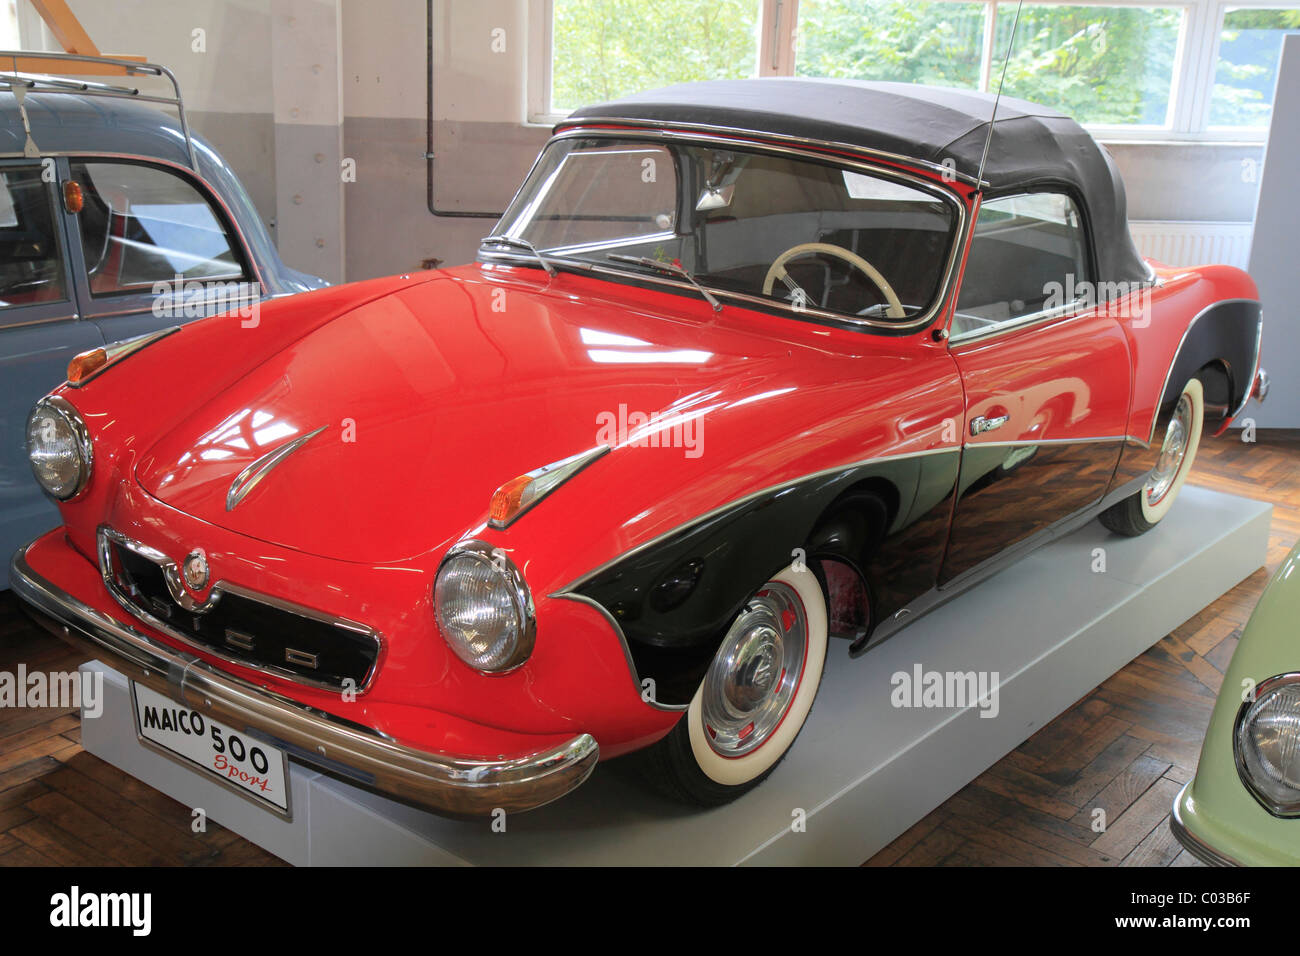 Maico 500 Sport vintage car, ErfinderZeiten: Auto- und Uhrenmuseum, Time of Innovators: Museum of Cars and Clocks, Schramberg Stock Photo